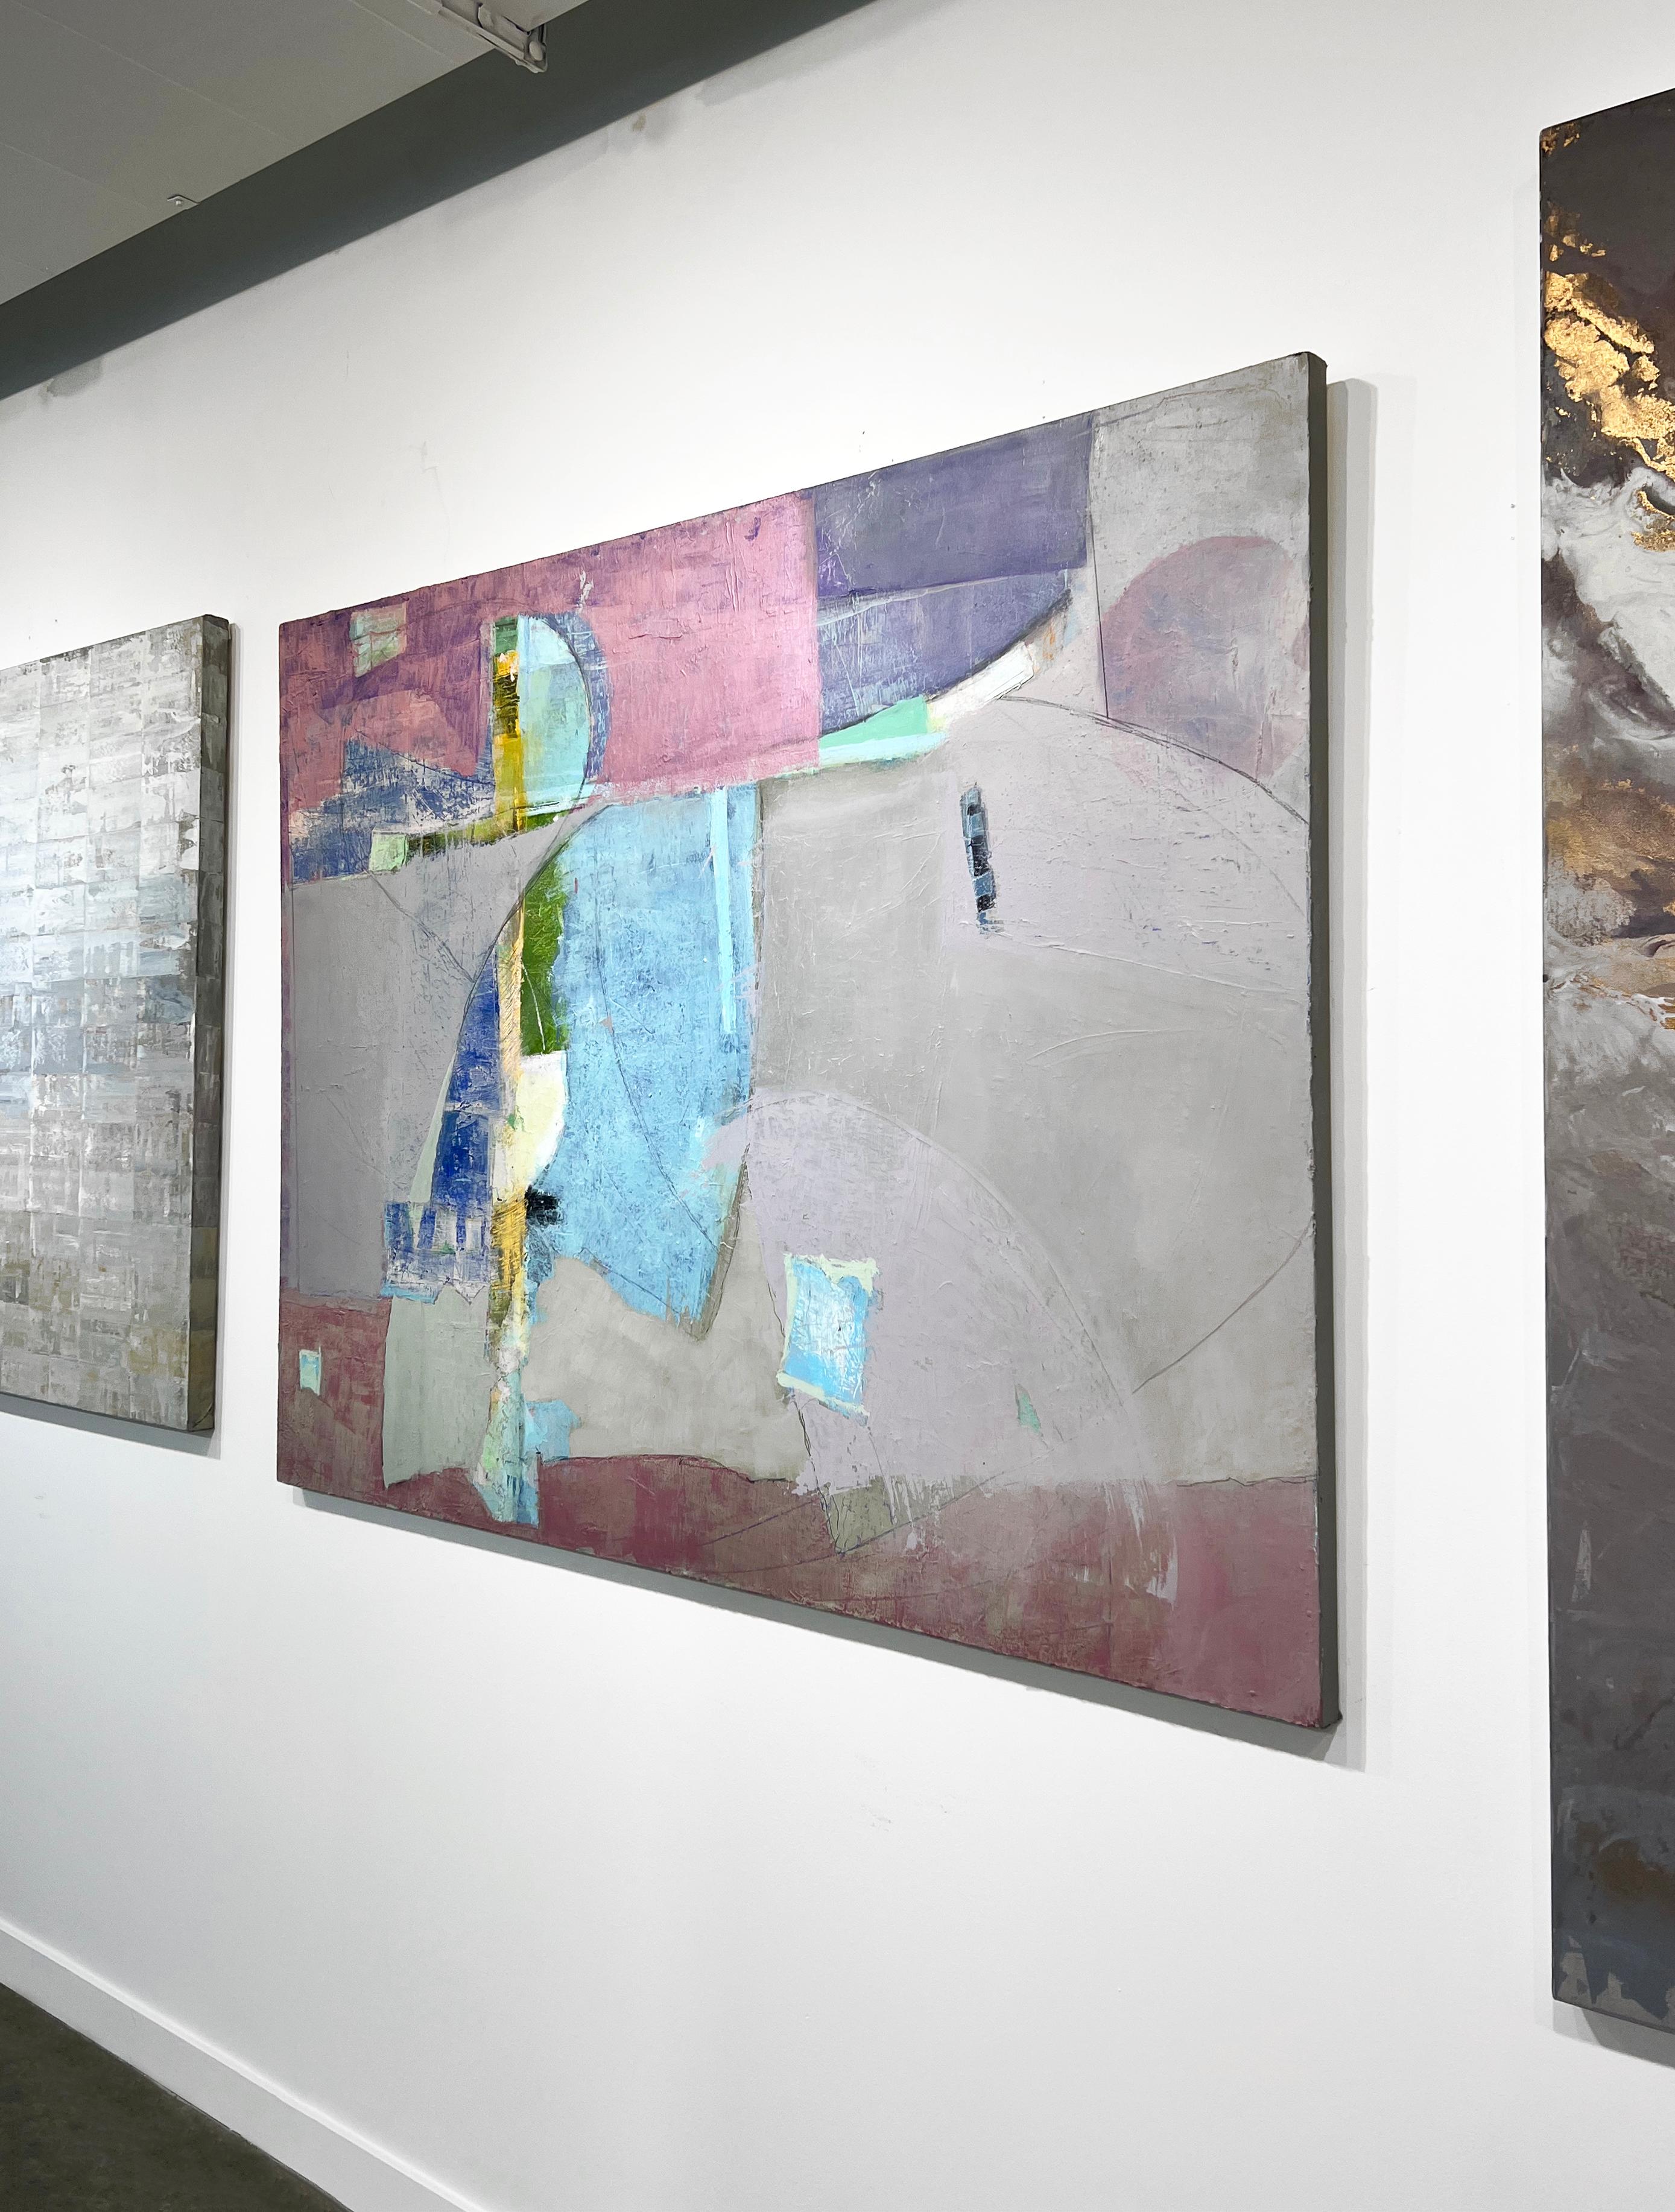 Dieses abstrakte Ölgemälde von Christine Averill-Green zeichnet sich durch eine einzigartige, kontrastreiche Farbpalette aus Rosa, Blau, Violett und Grau aus. Der Künstler schichtet organische Formen und Farbe übereinander, um eine stark